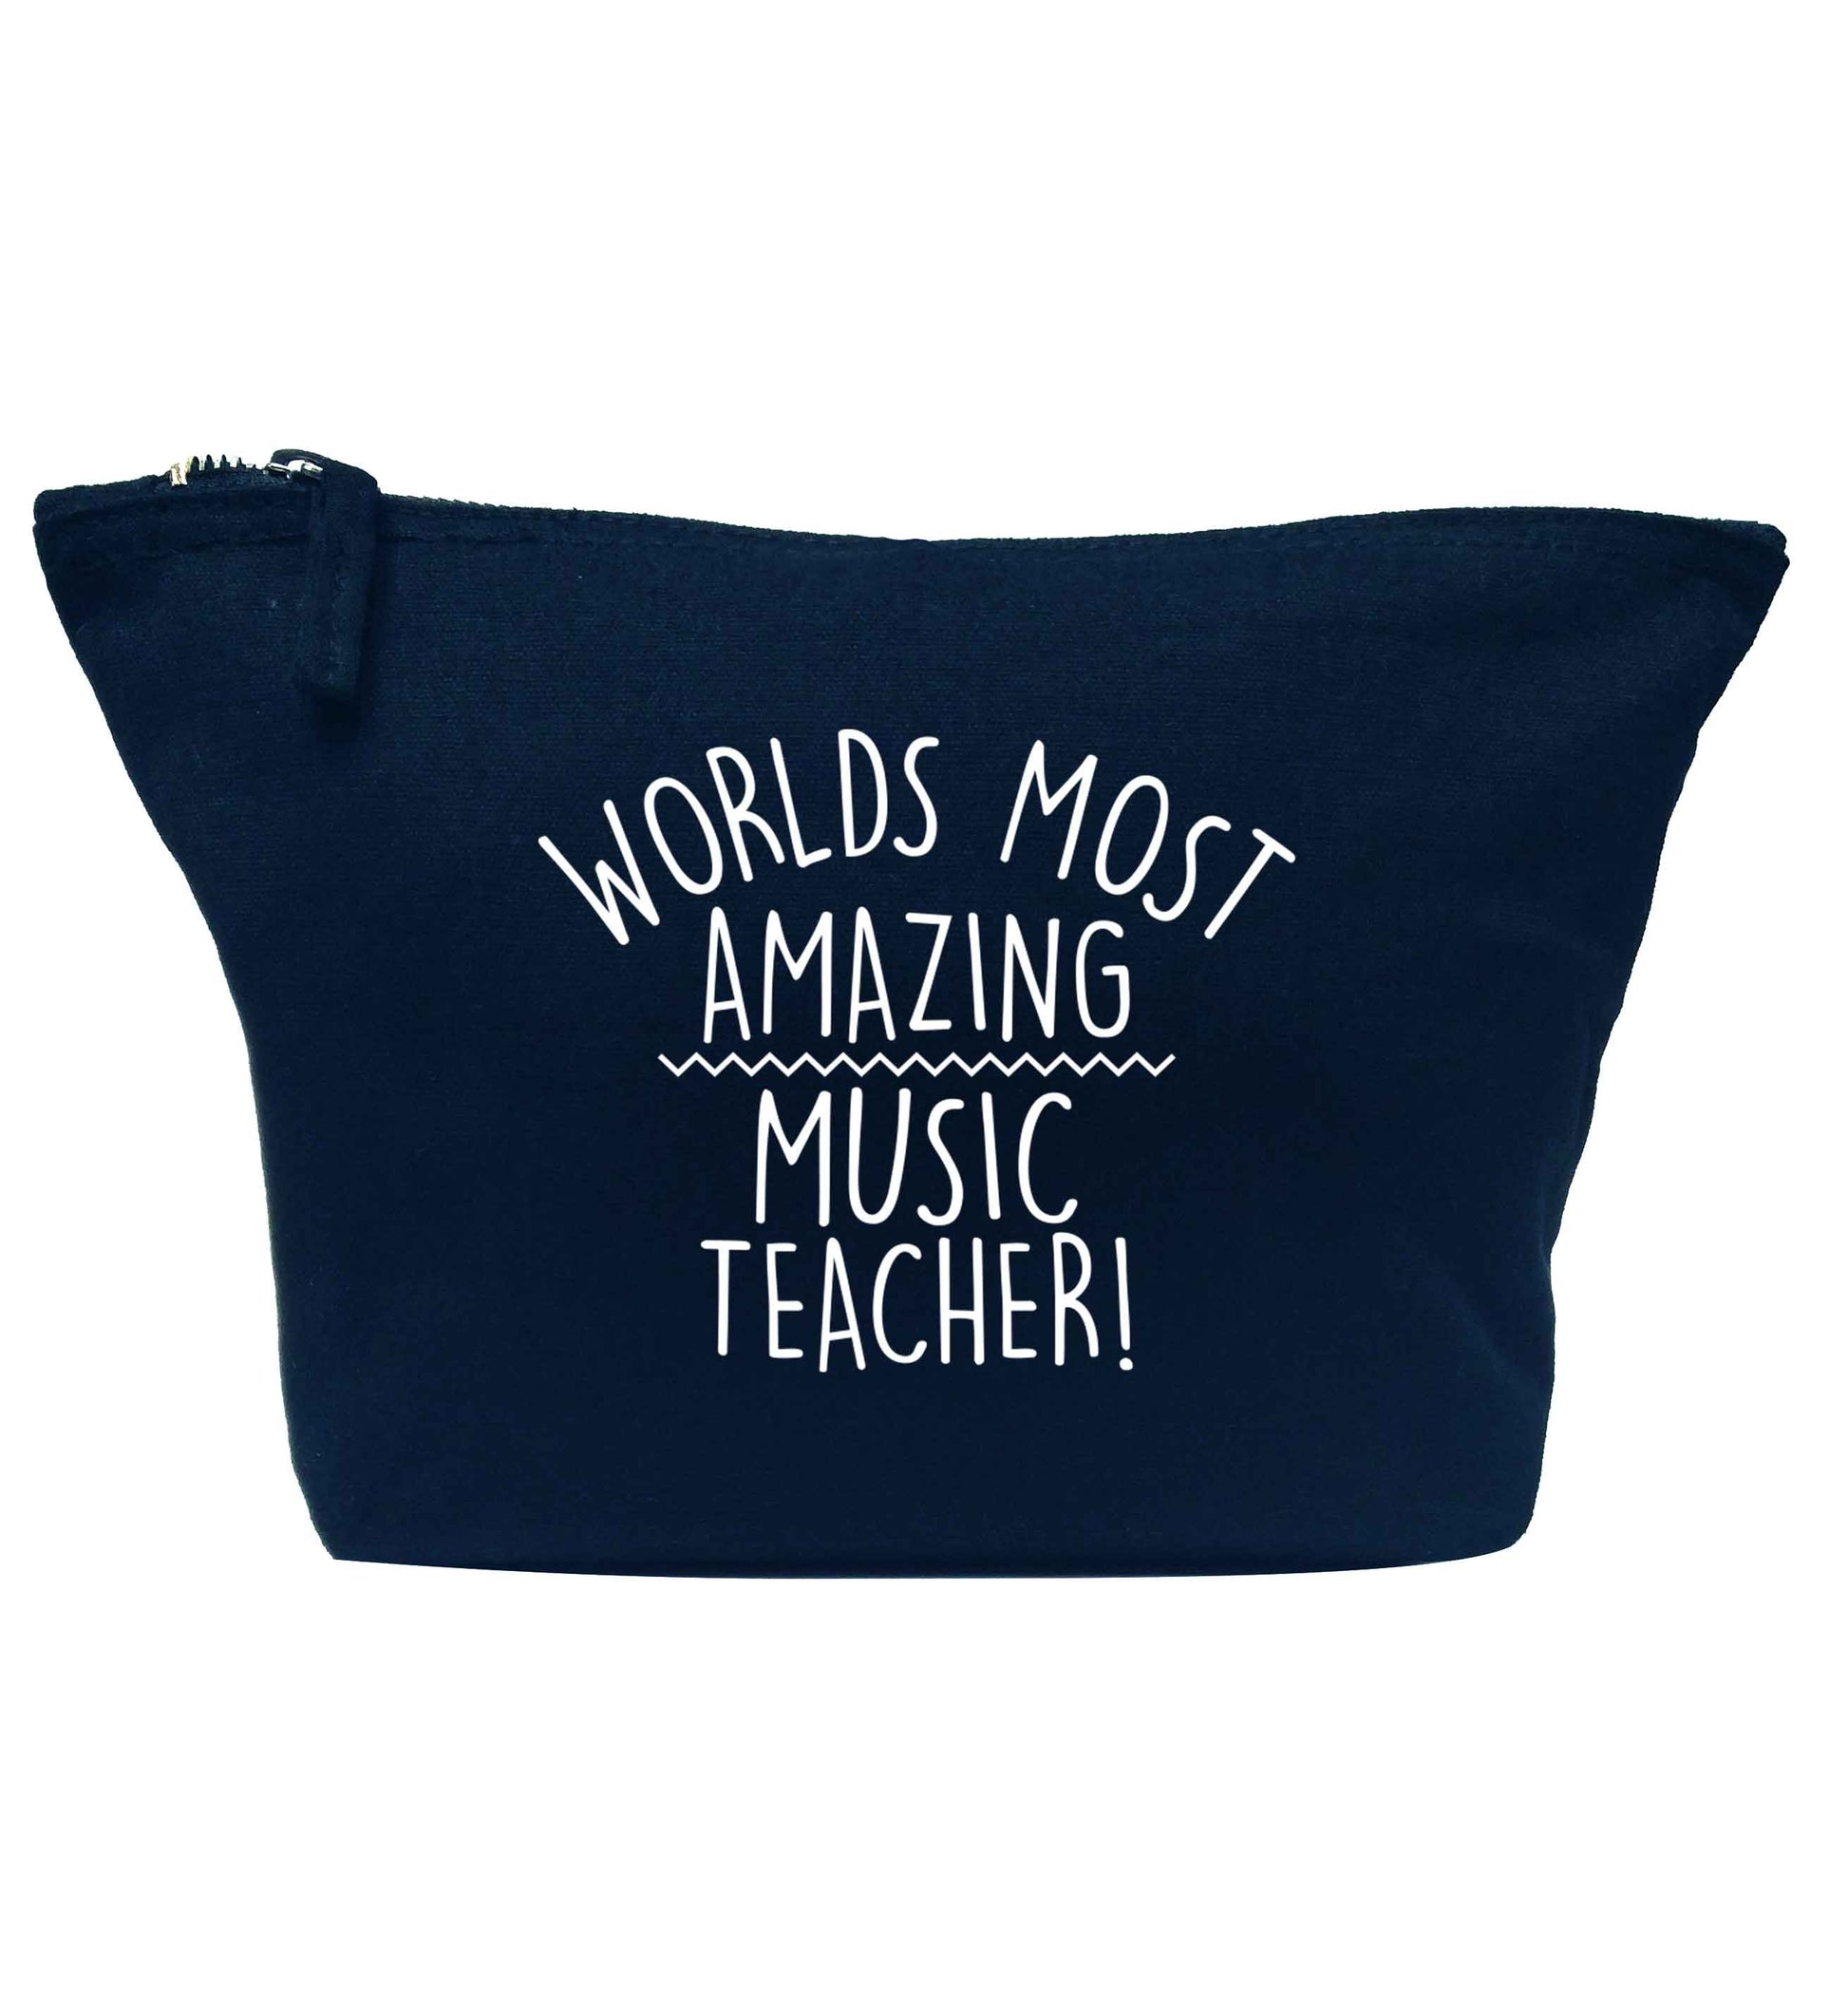 Worlds most amazing music teacher navy makeup bag